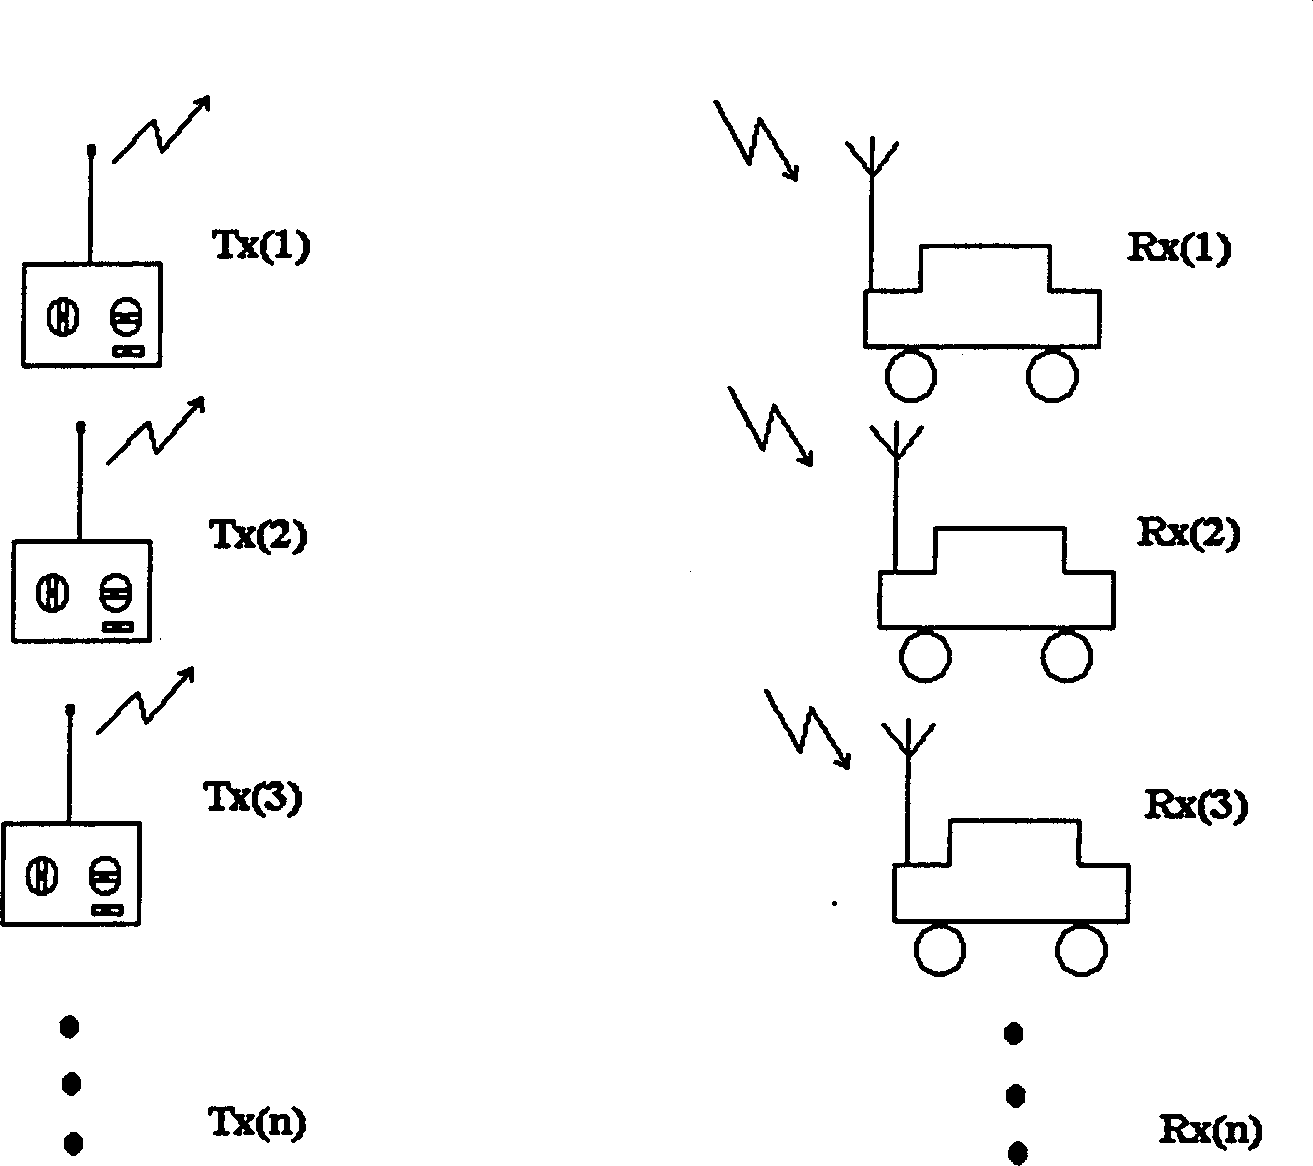 Multichannel remote control device